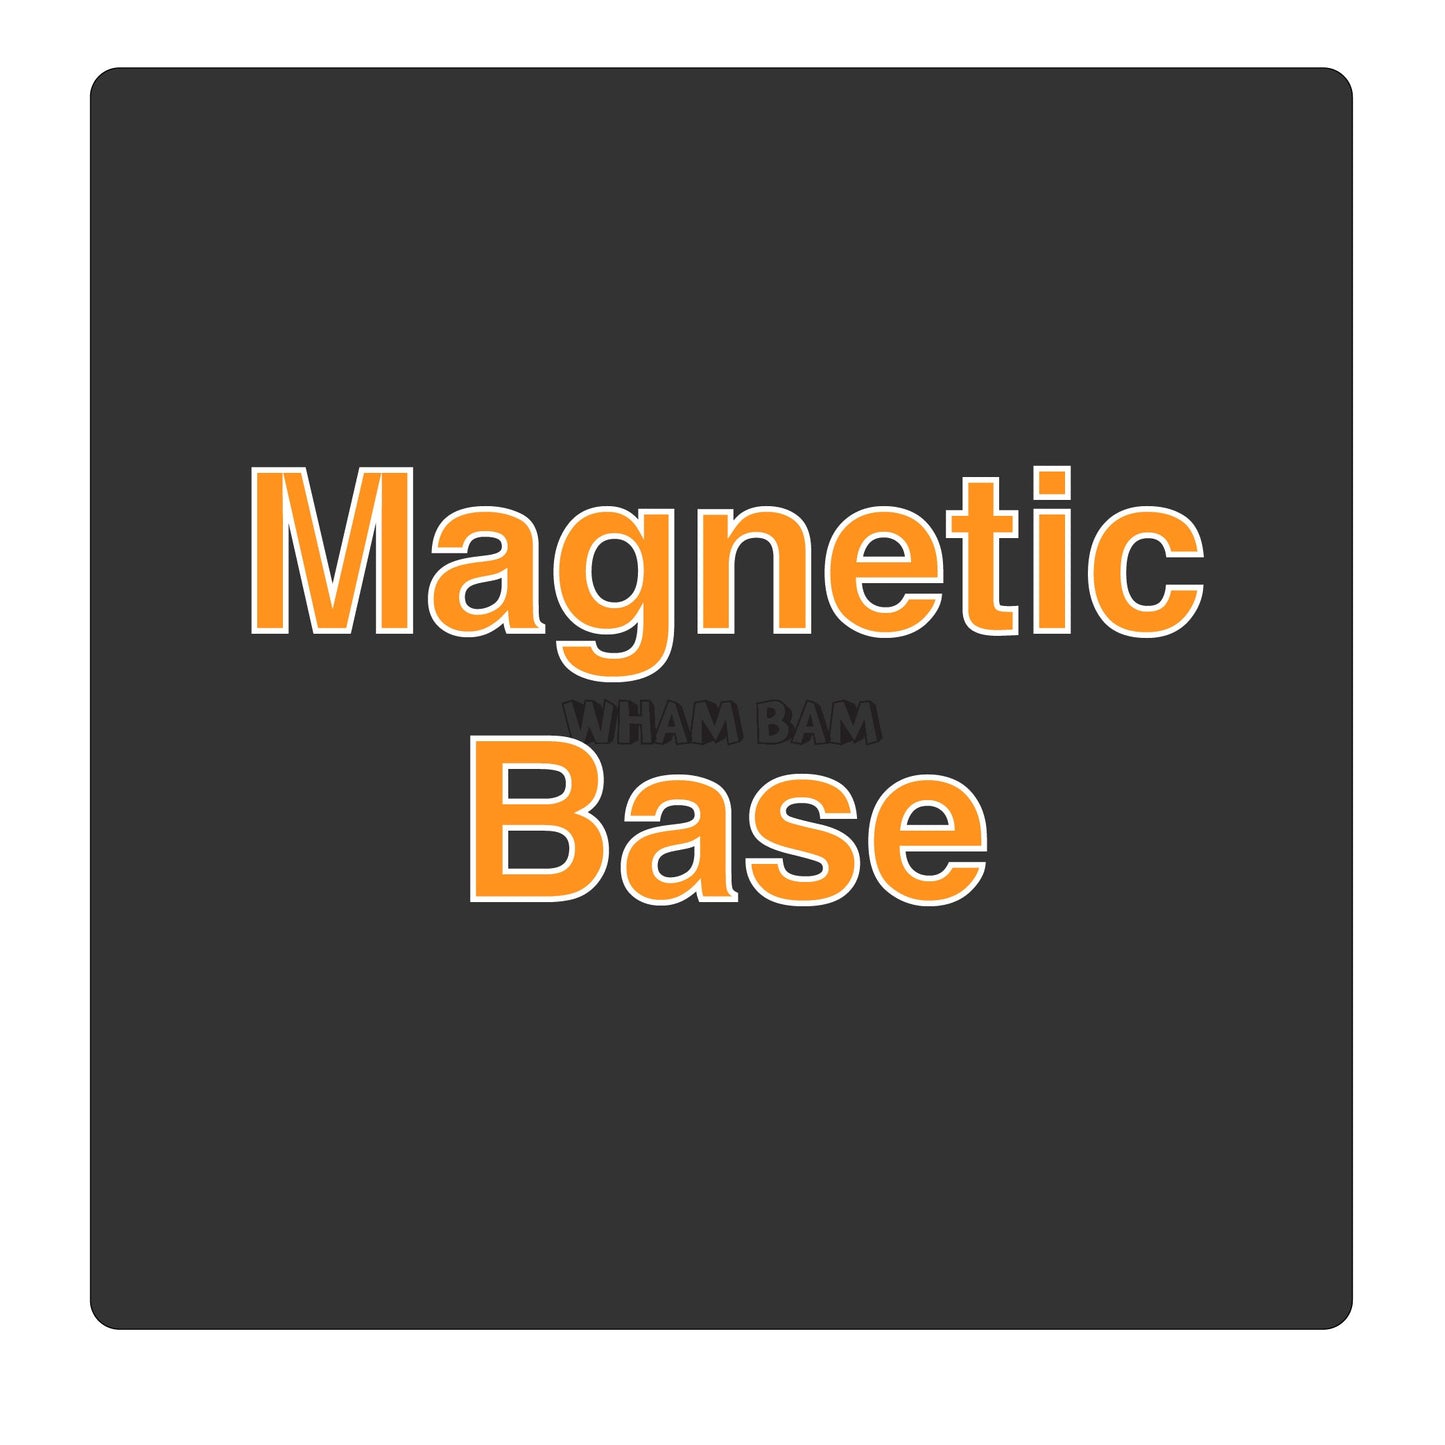 Magnetic Base - 235 x 235 - Creality Ender 3 & 5,  Biqu B1, Elegoo Neptune 2